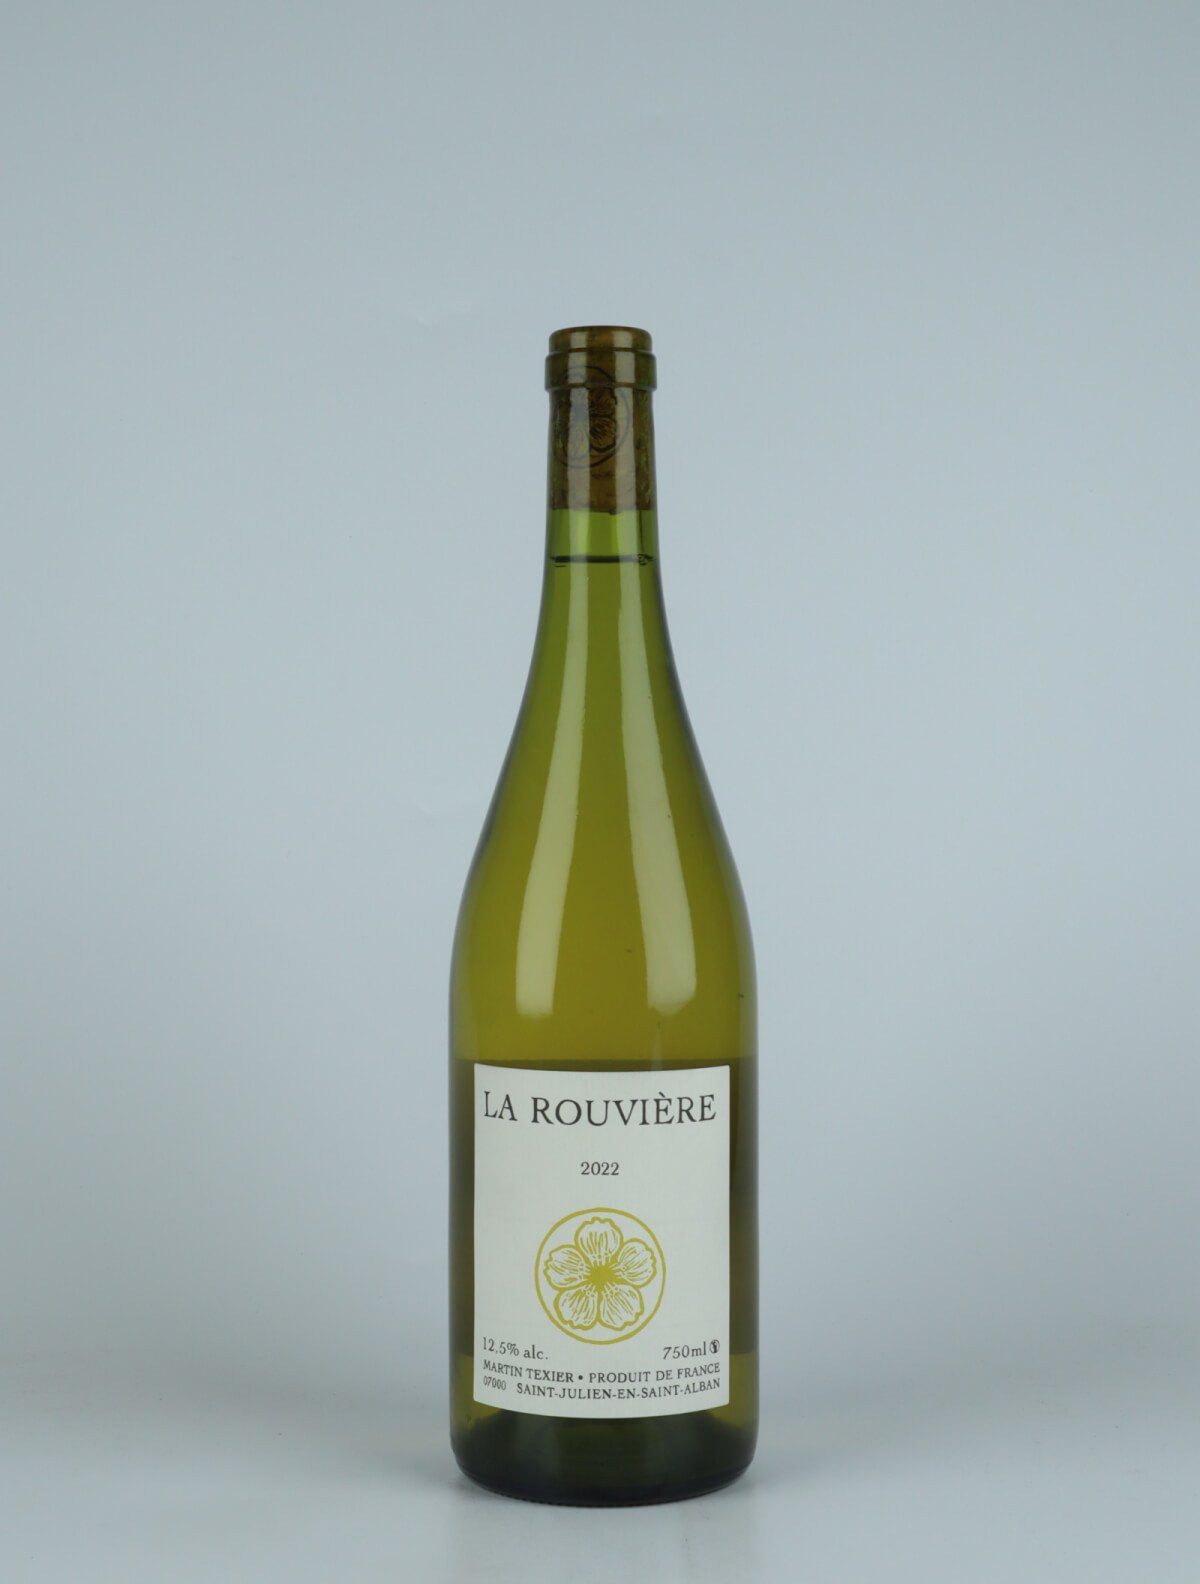 A bottle 2022 La Rouvière White wine from Martin Texier, Rhône in France